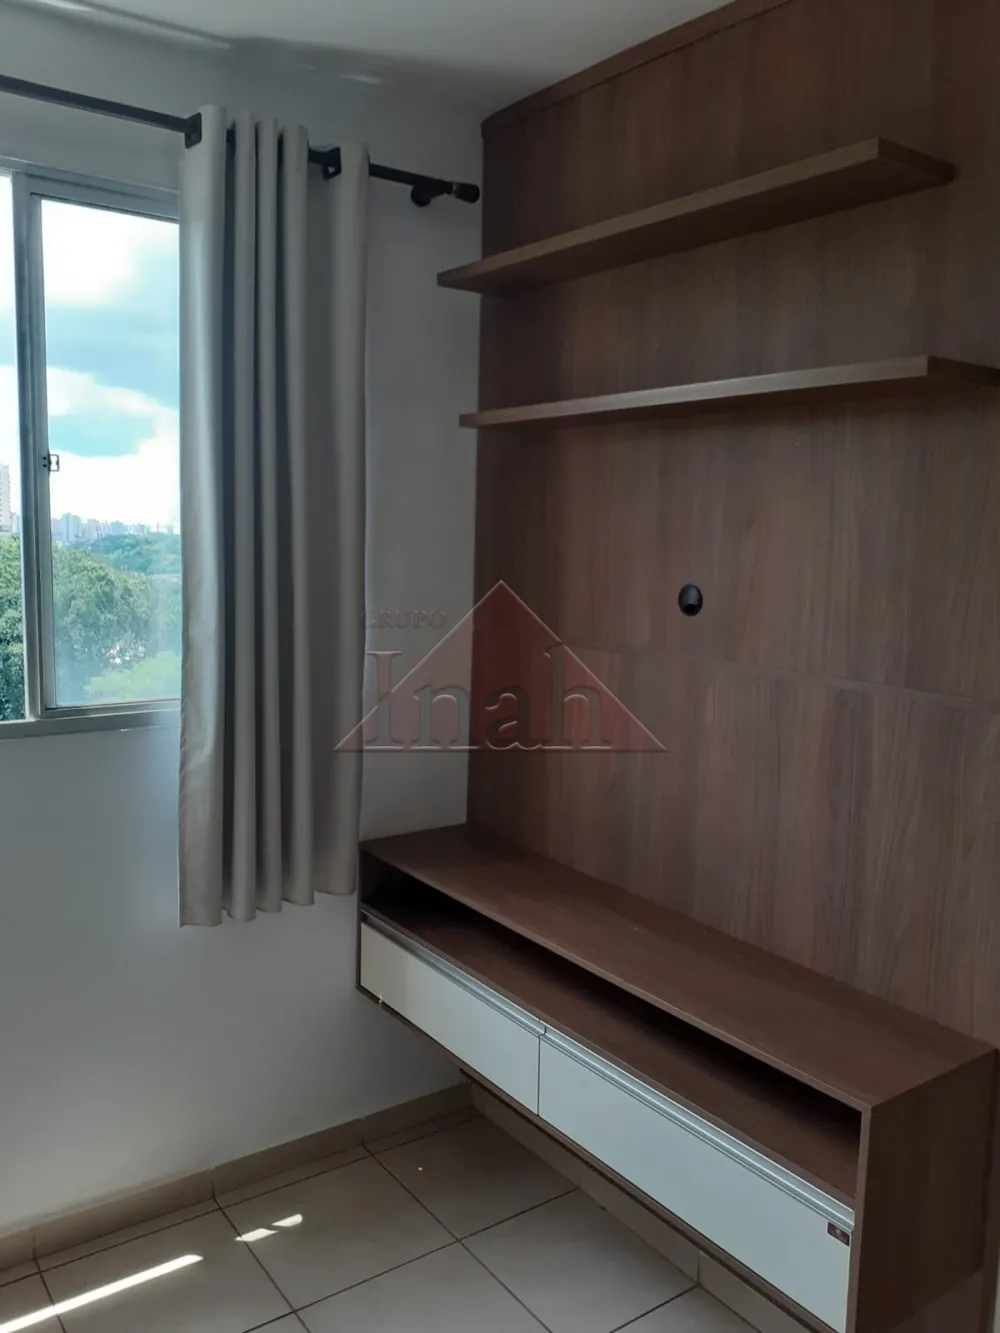 Comprar Apartamentos / Apartamento em Ribeirão Preto R$ 250.000,00 - Foto 9